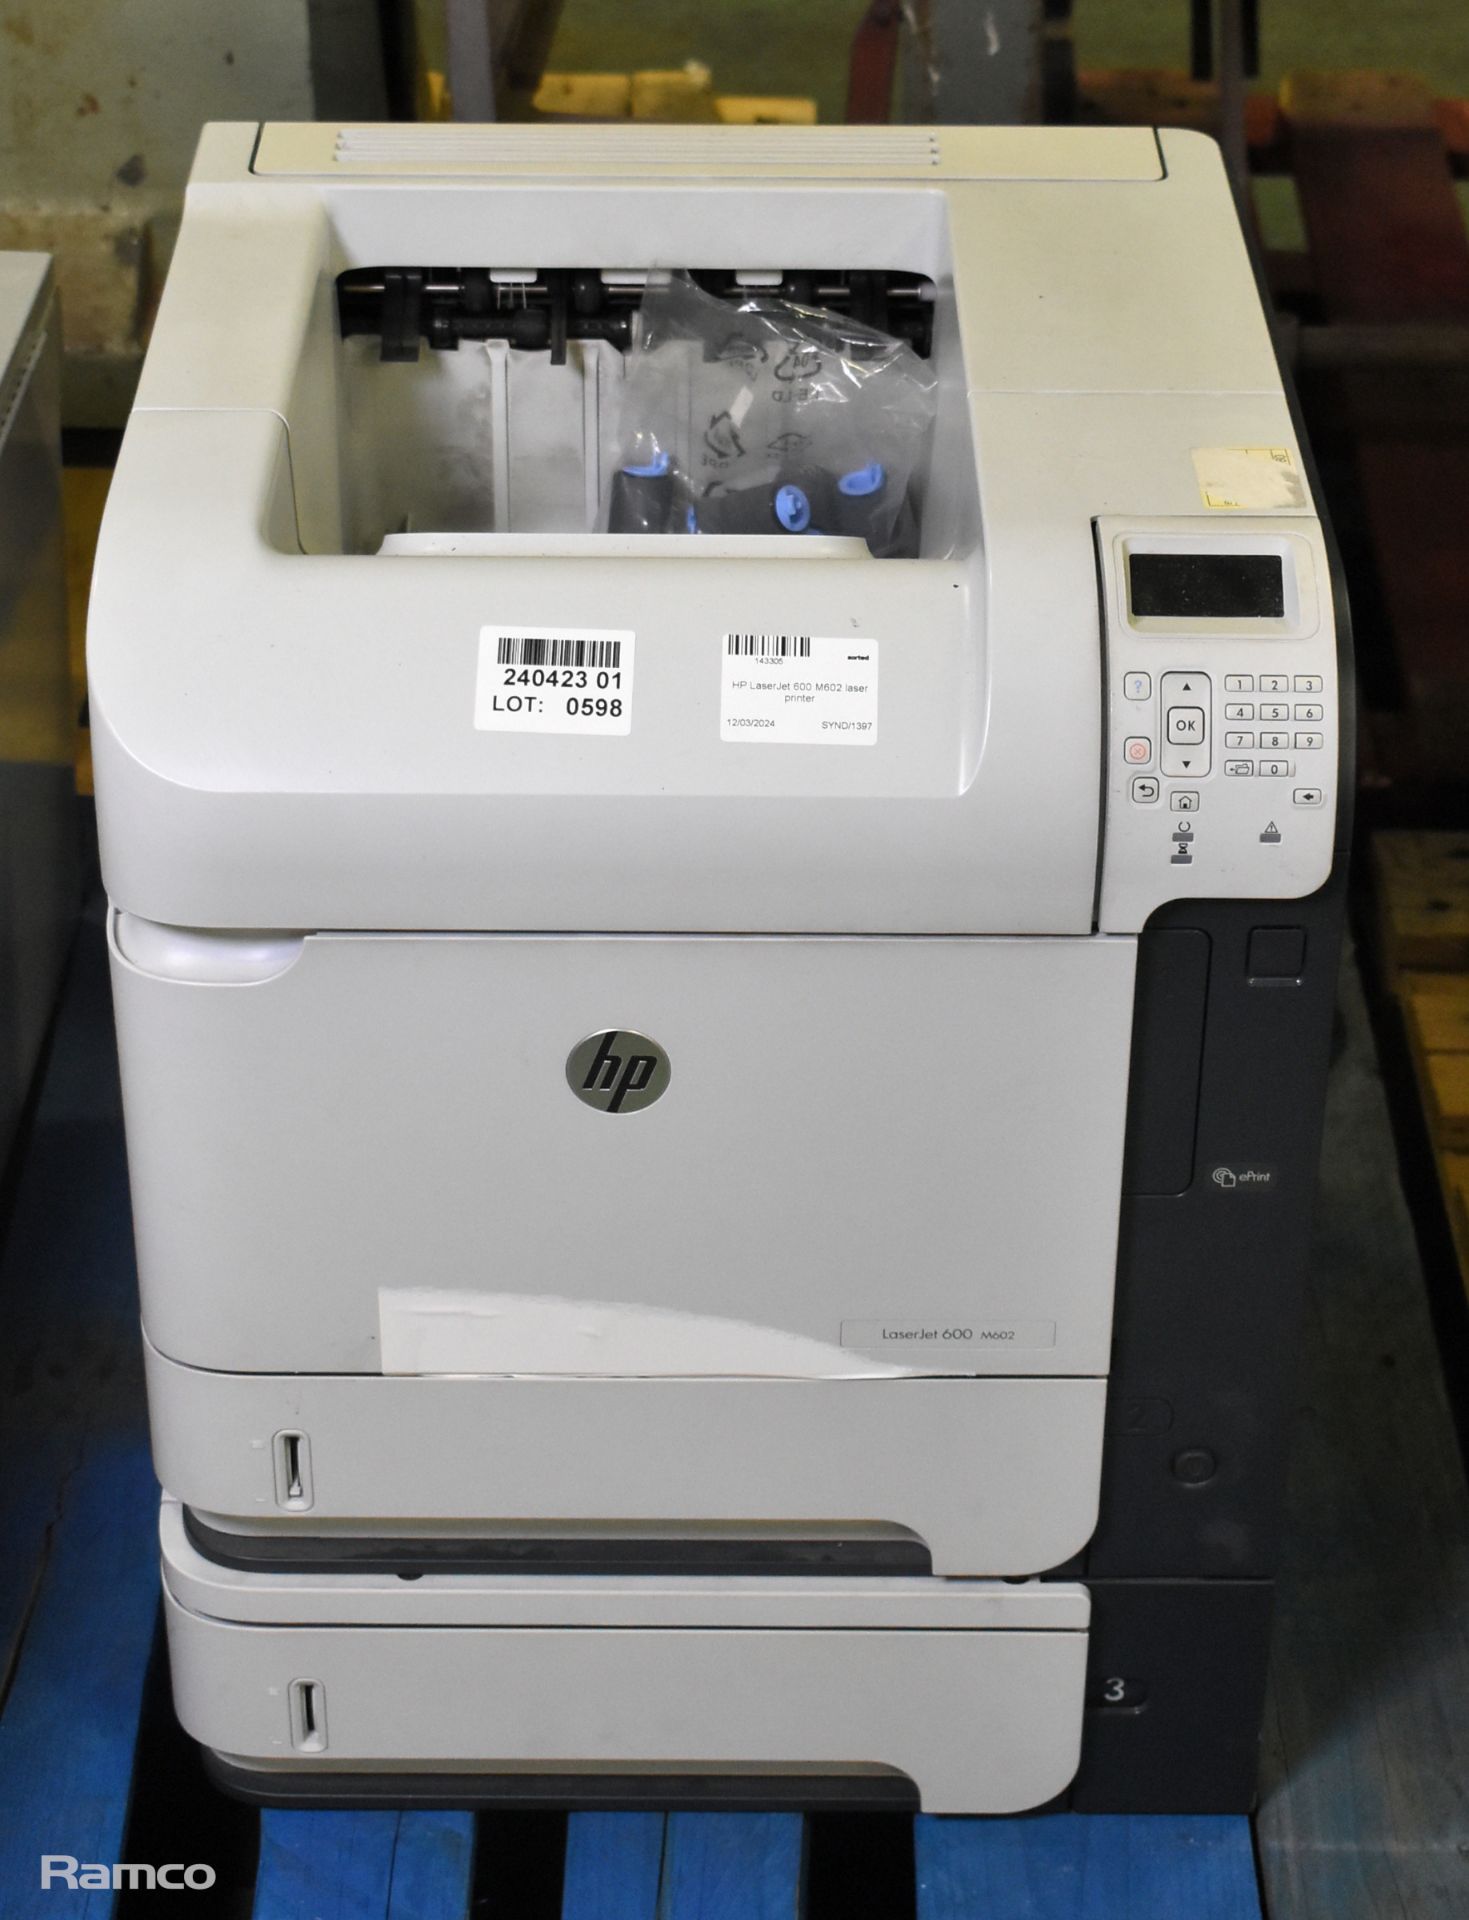 HP LaserJet 600 M602 laser printer